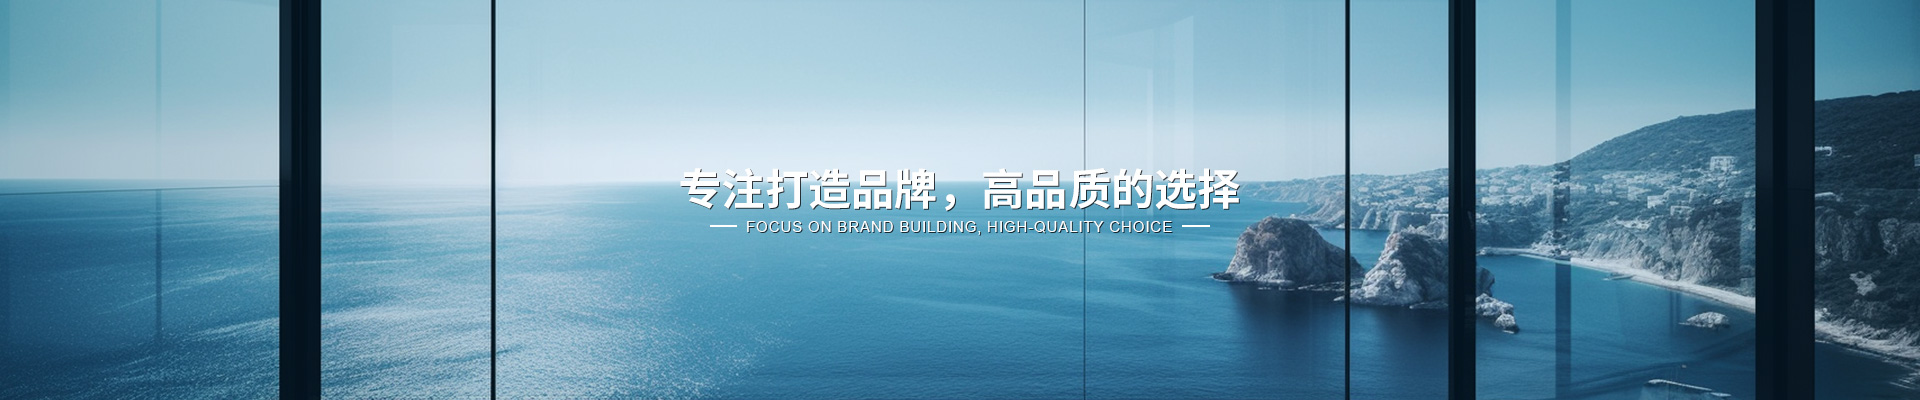 上海水儀科技有限公司公司介紹